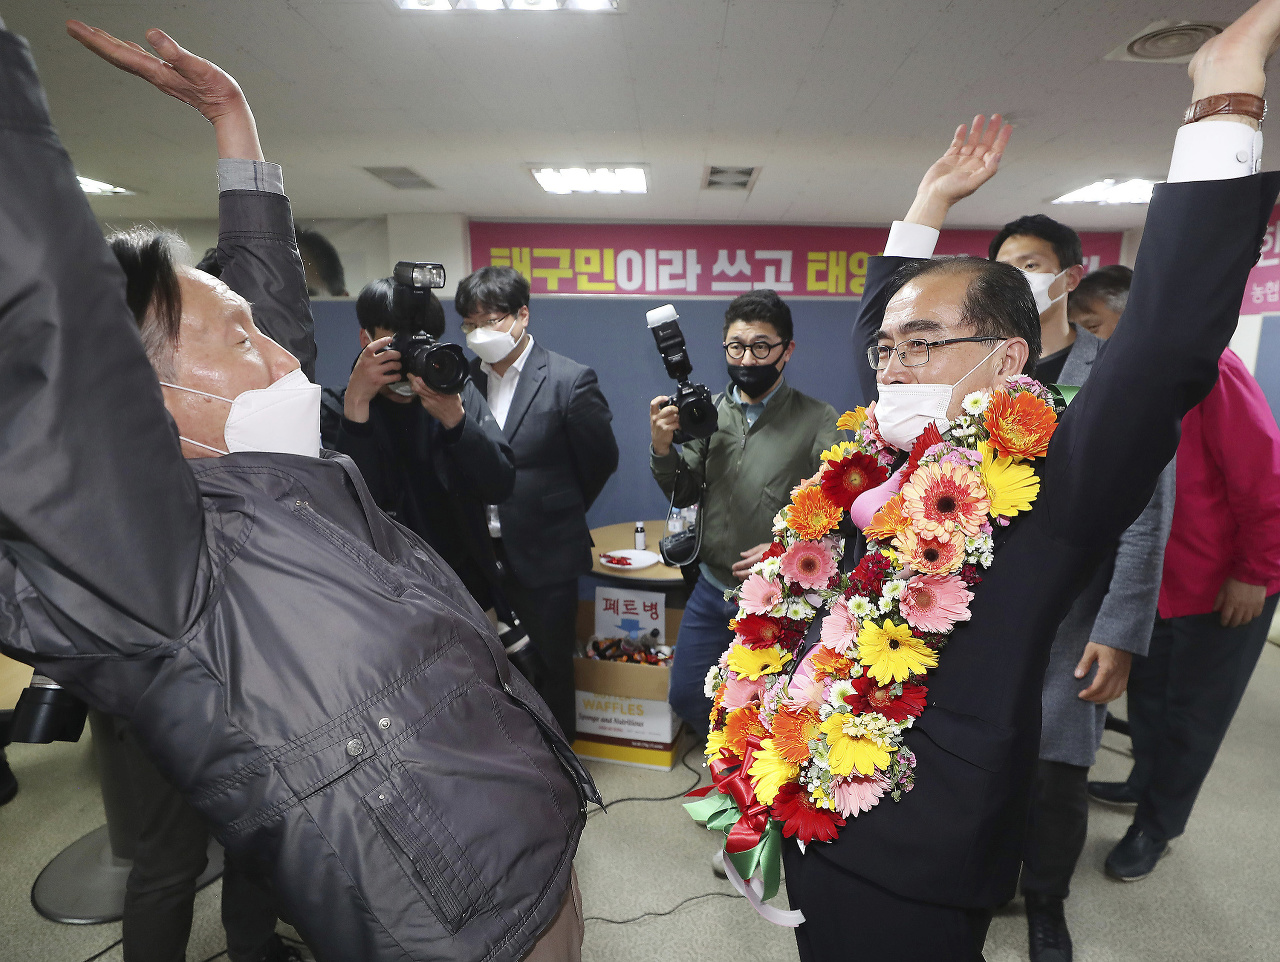 Vpravo bývalý severokórejský diplomat Tche Jong-ho, ktorý prebehol do Južnej Kórey, oslavuje zvolenie do juhokórejského parlamentu